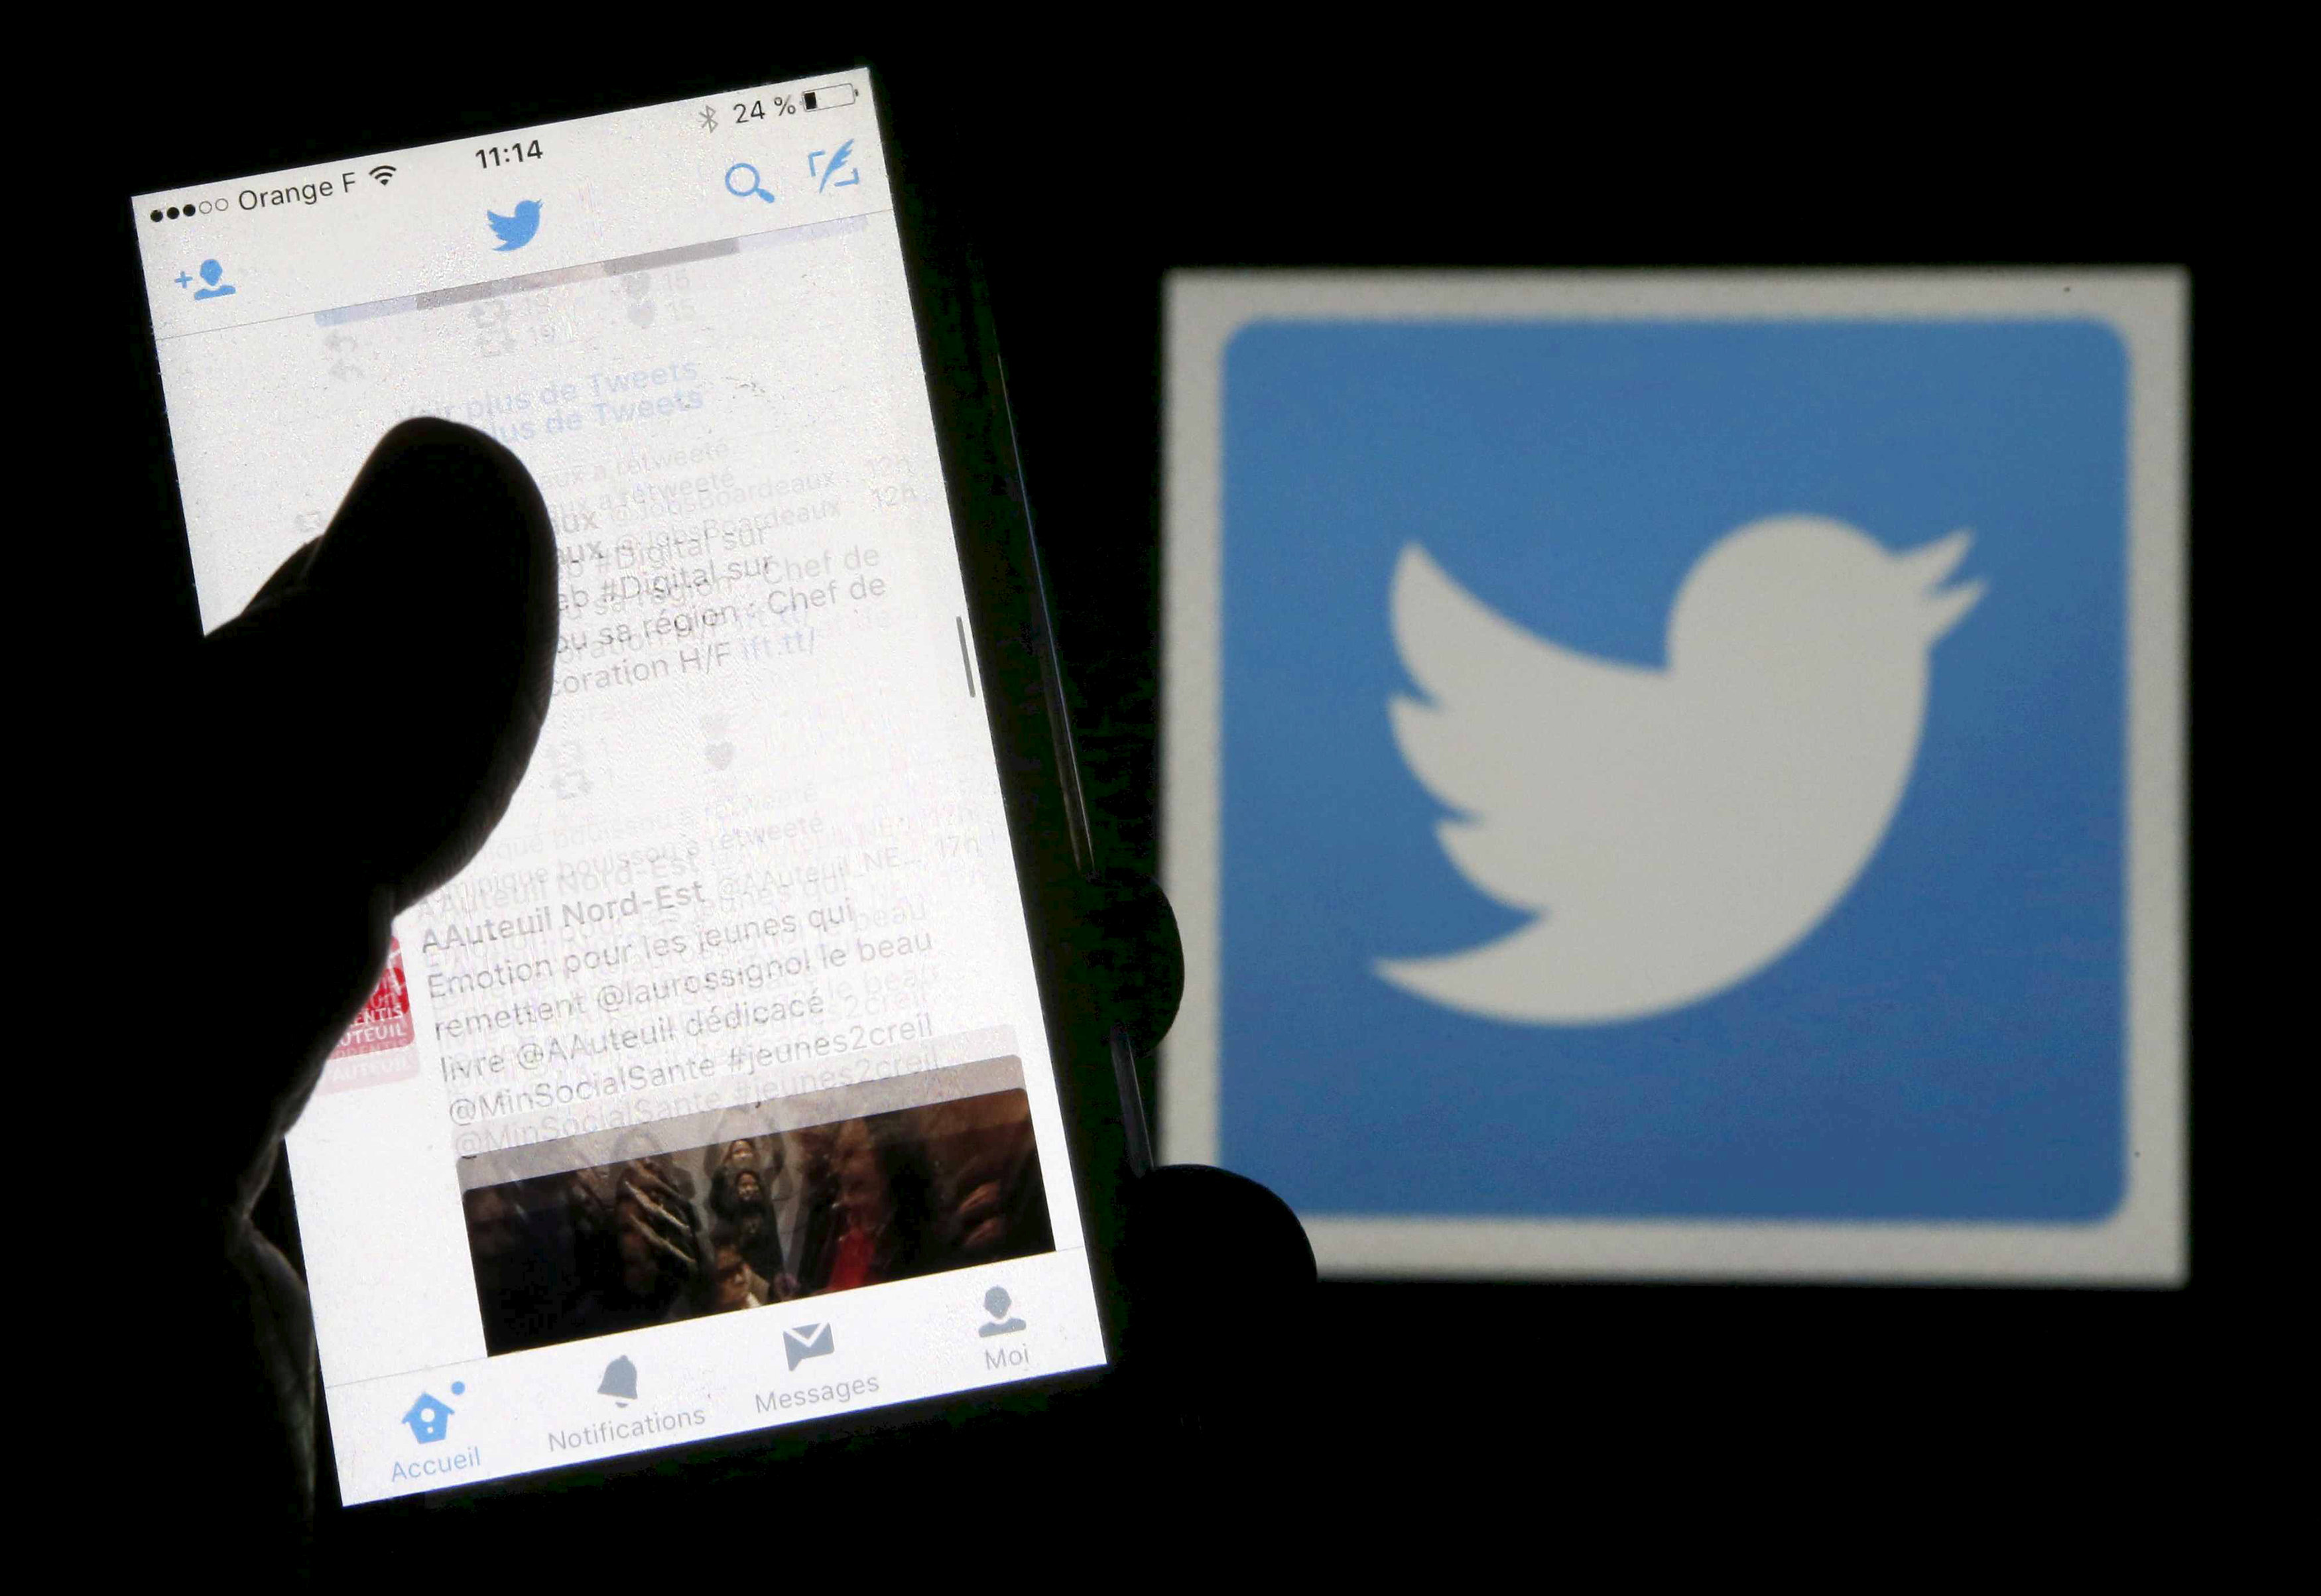 Twitter cierra miles de cuentas de noticias falsas en todo el mundo